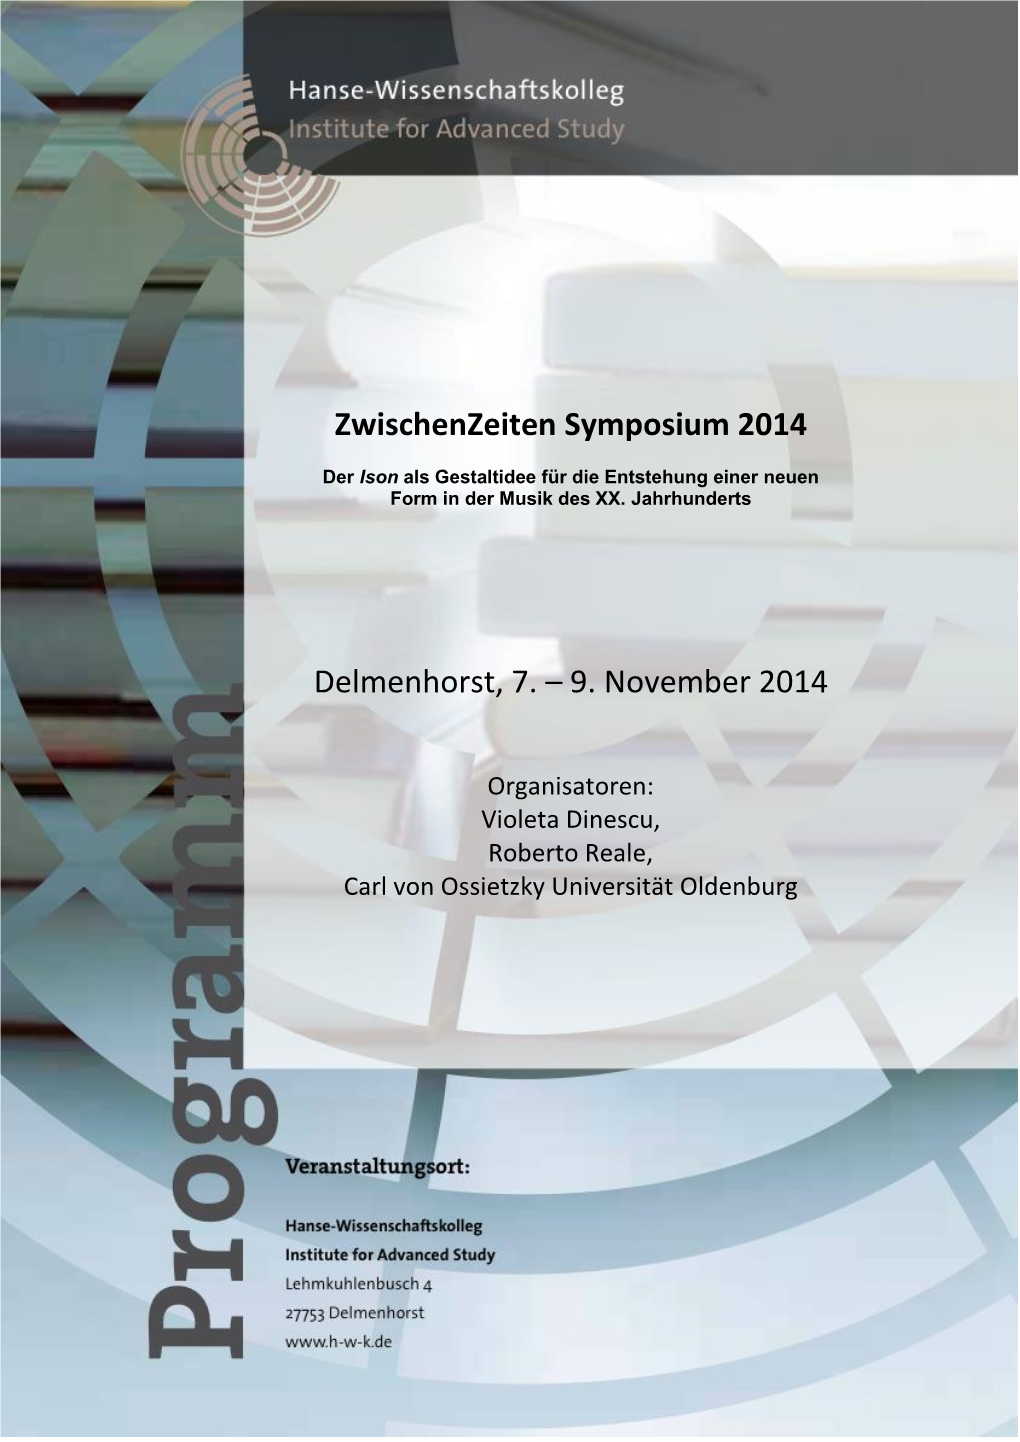 9. Zwischenzeiten Symposium 2014, Delmenhorst, 7.-9. November